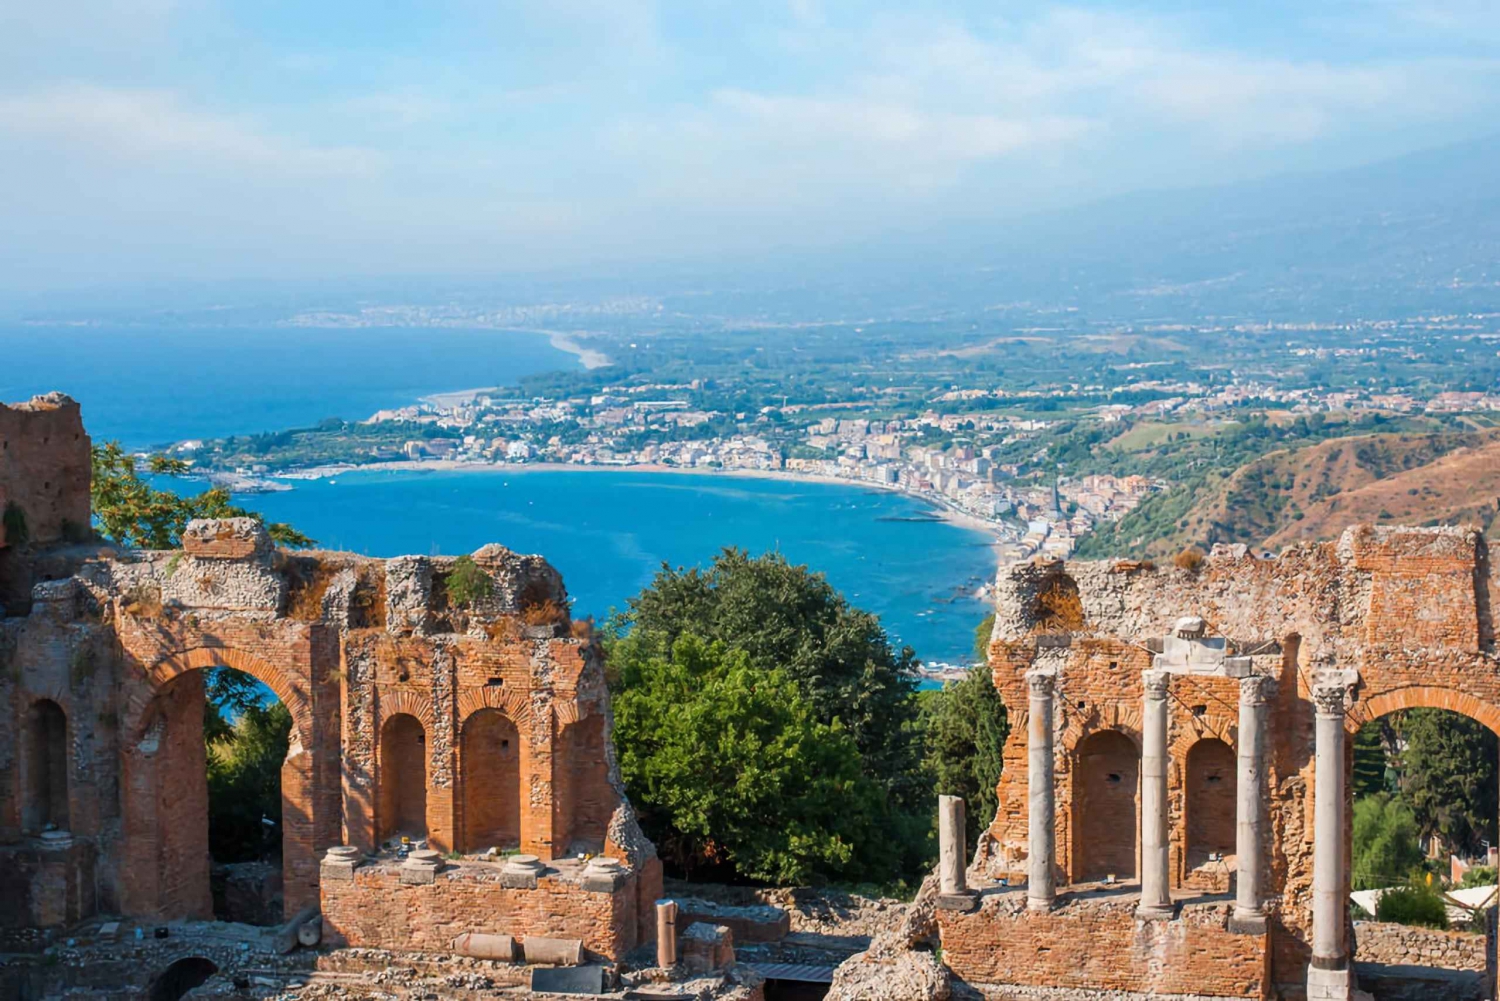 Messina Shore Excursion: Privat resa till Taormina & Etna